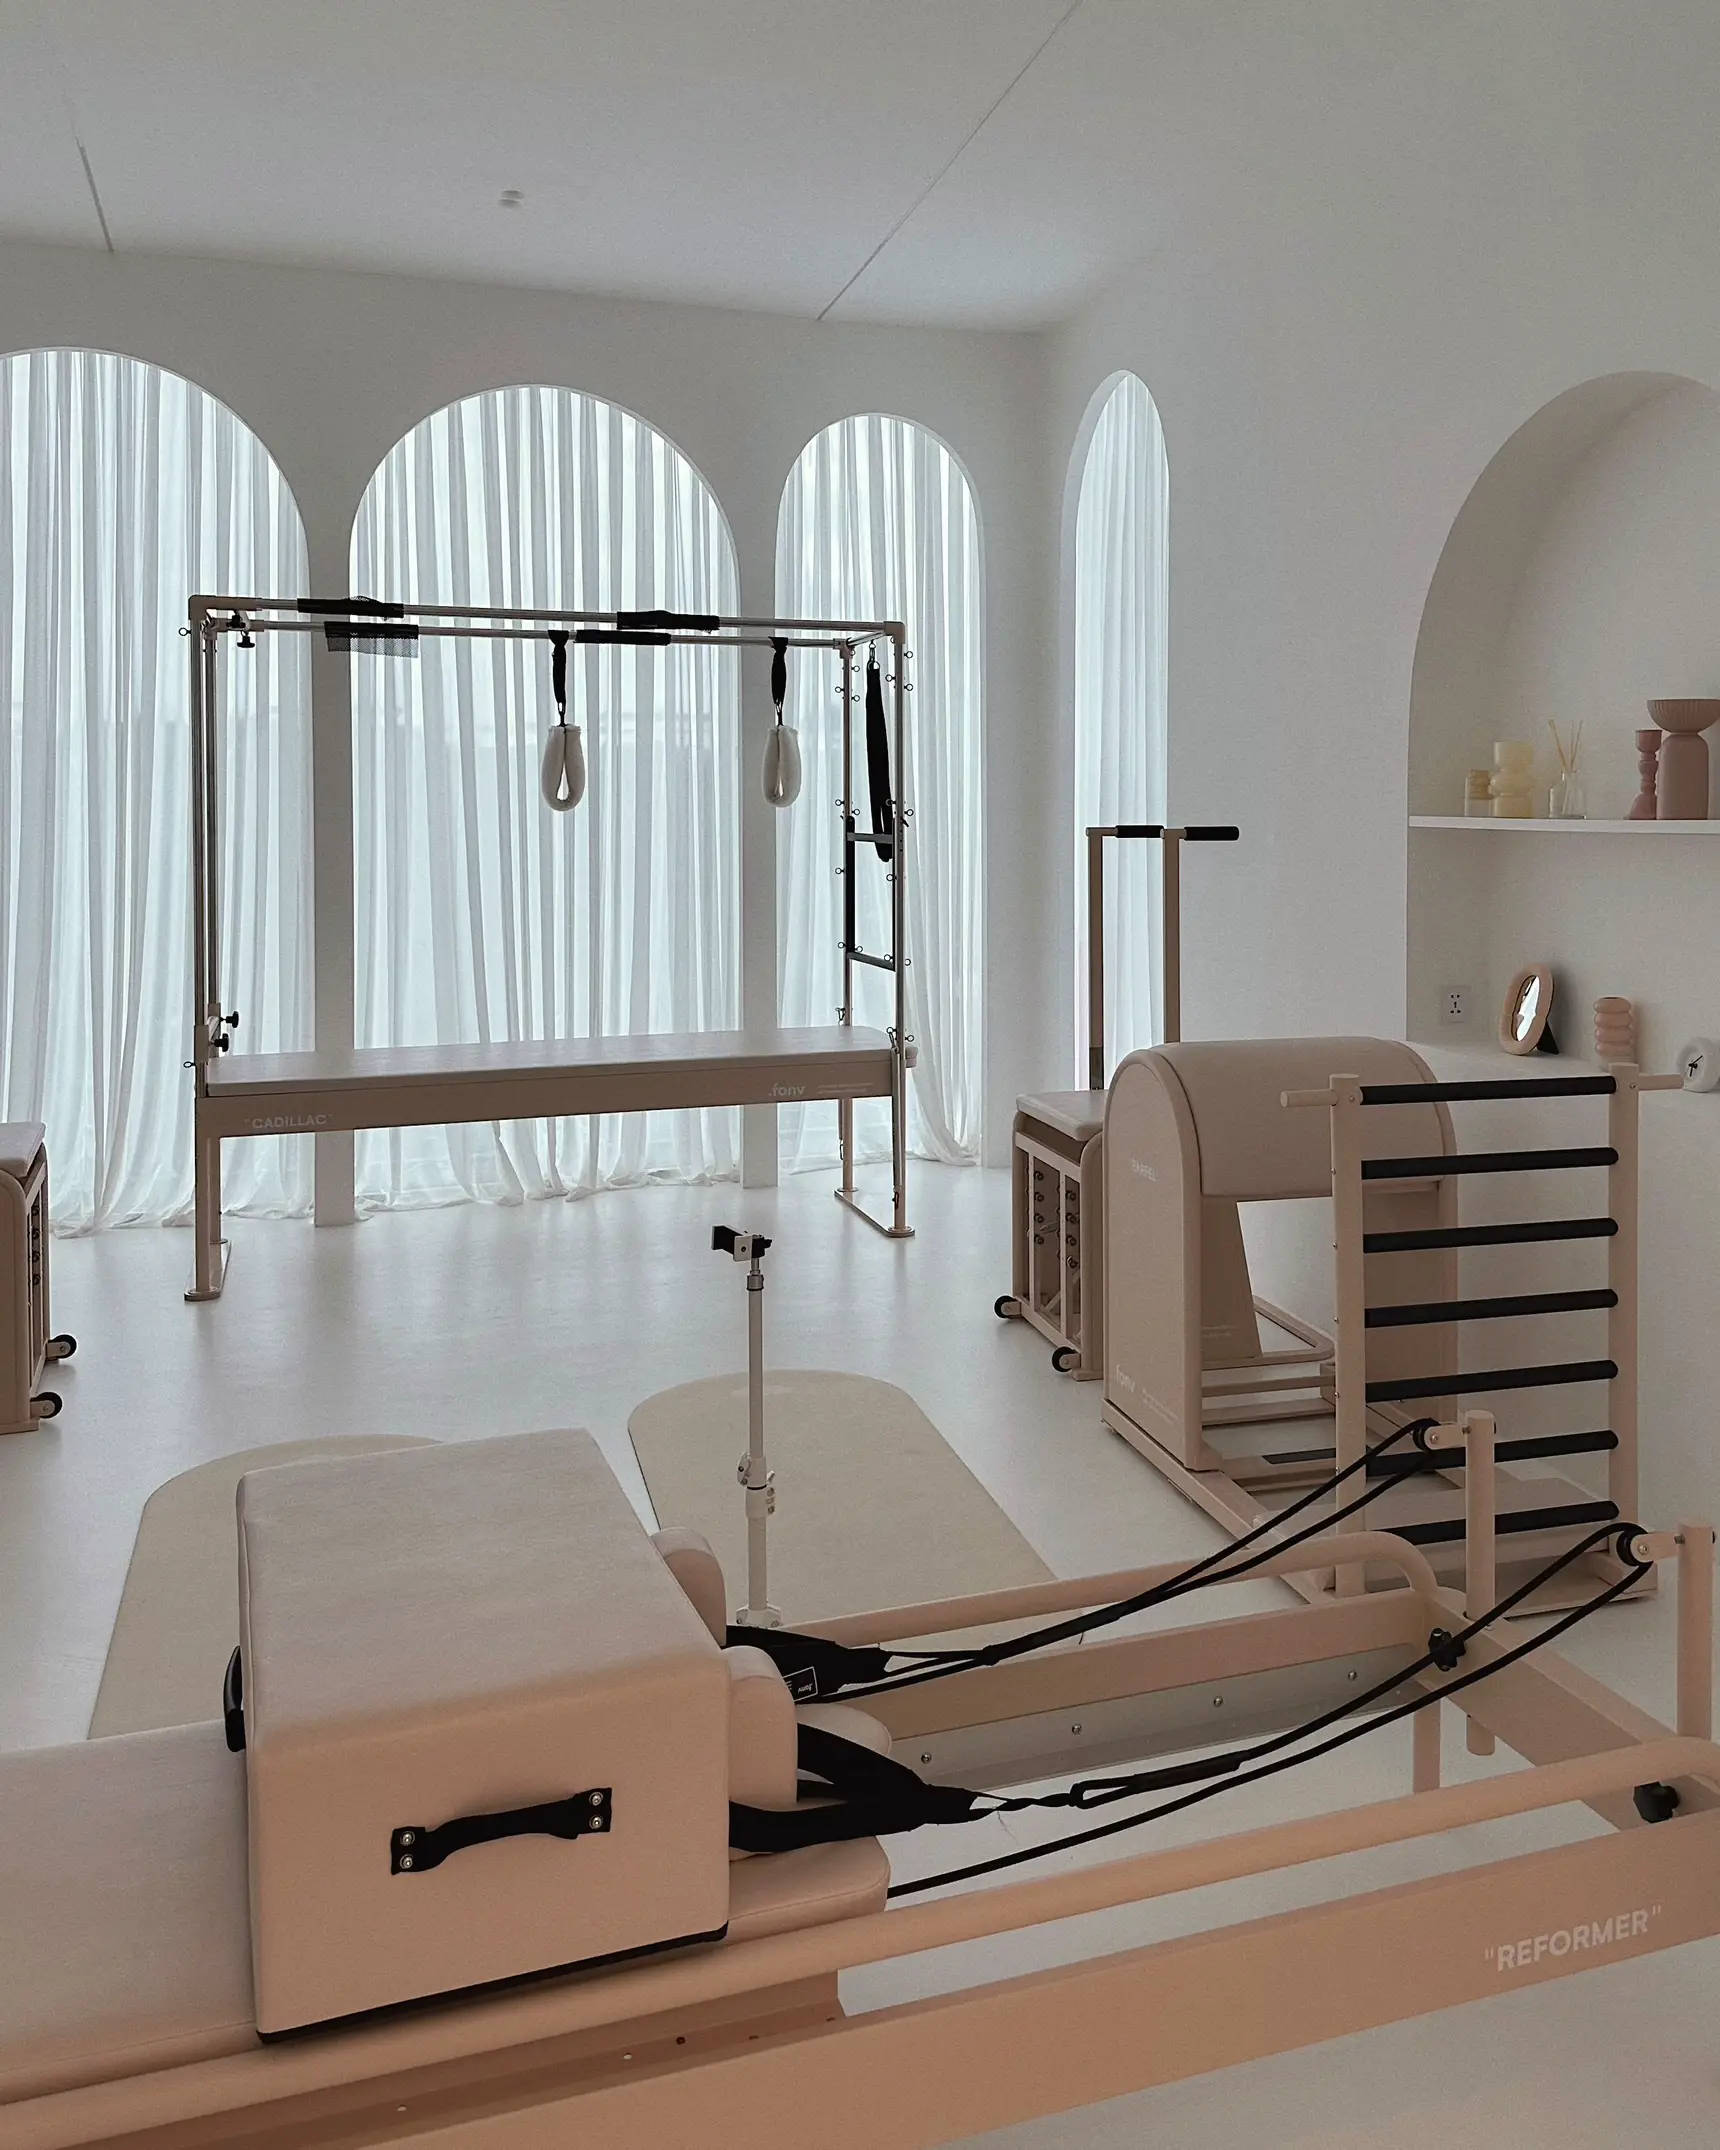 fonv Reformer Pilates Equipment lets you get fit at home » Gadget Flow